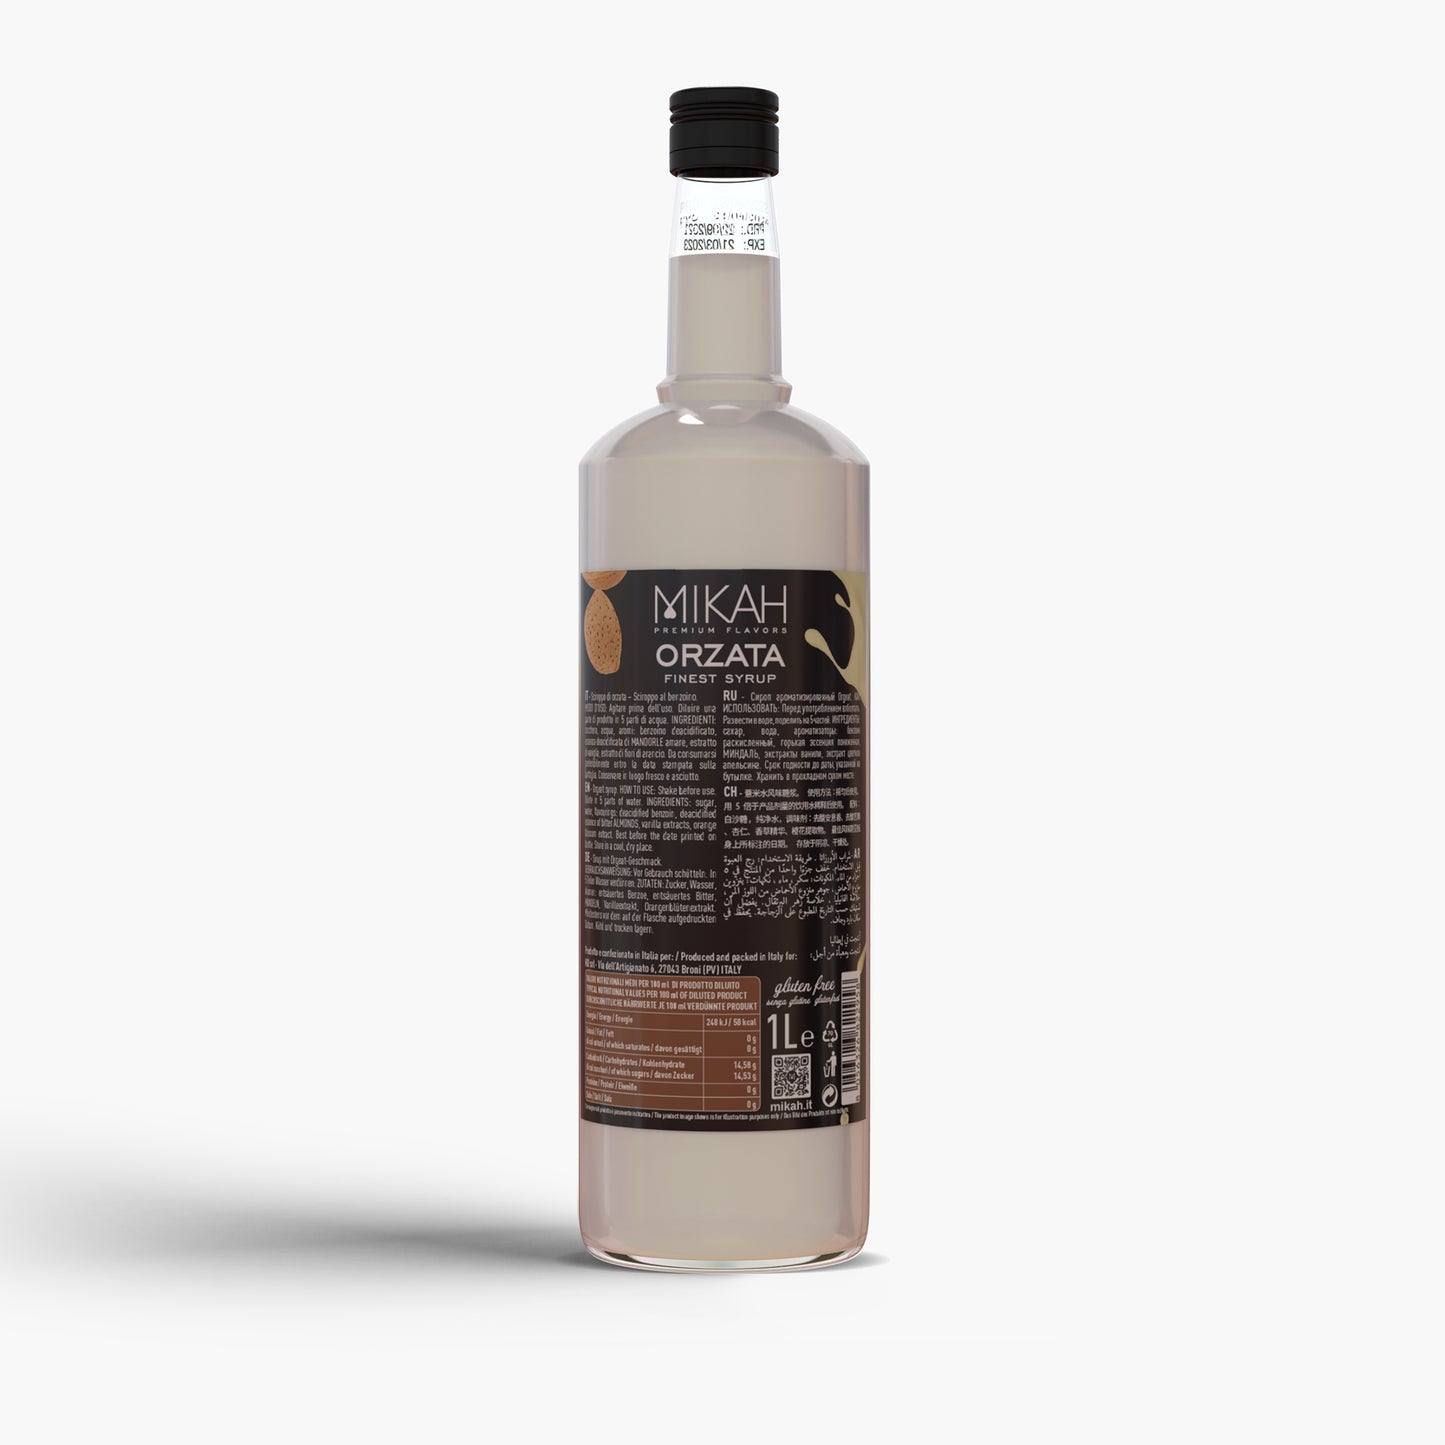 
                  
                    Syrup Mikah Premium Flavors - Orzata 1L
                  
                